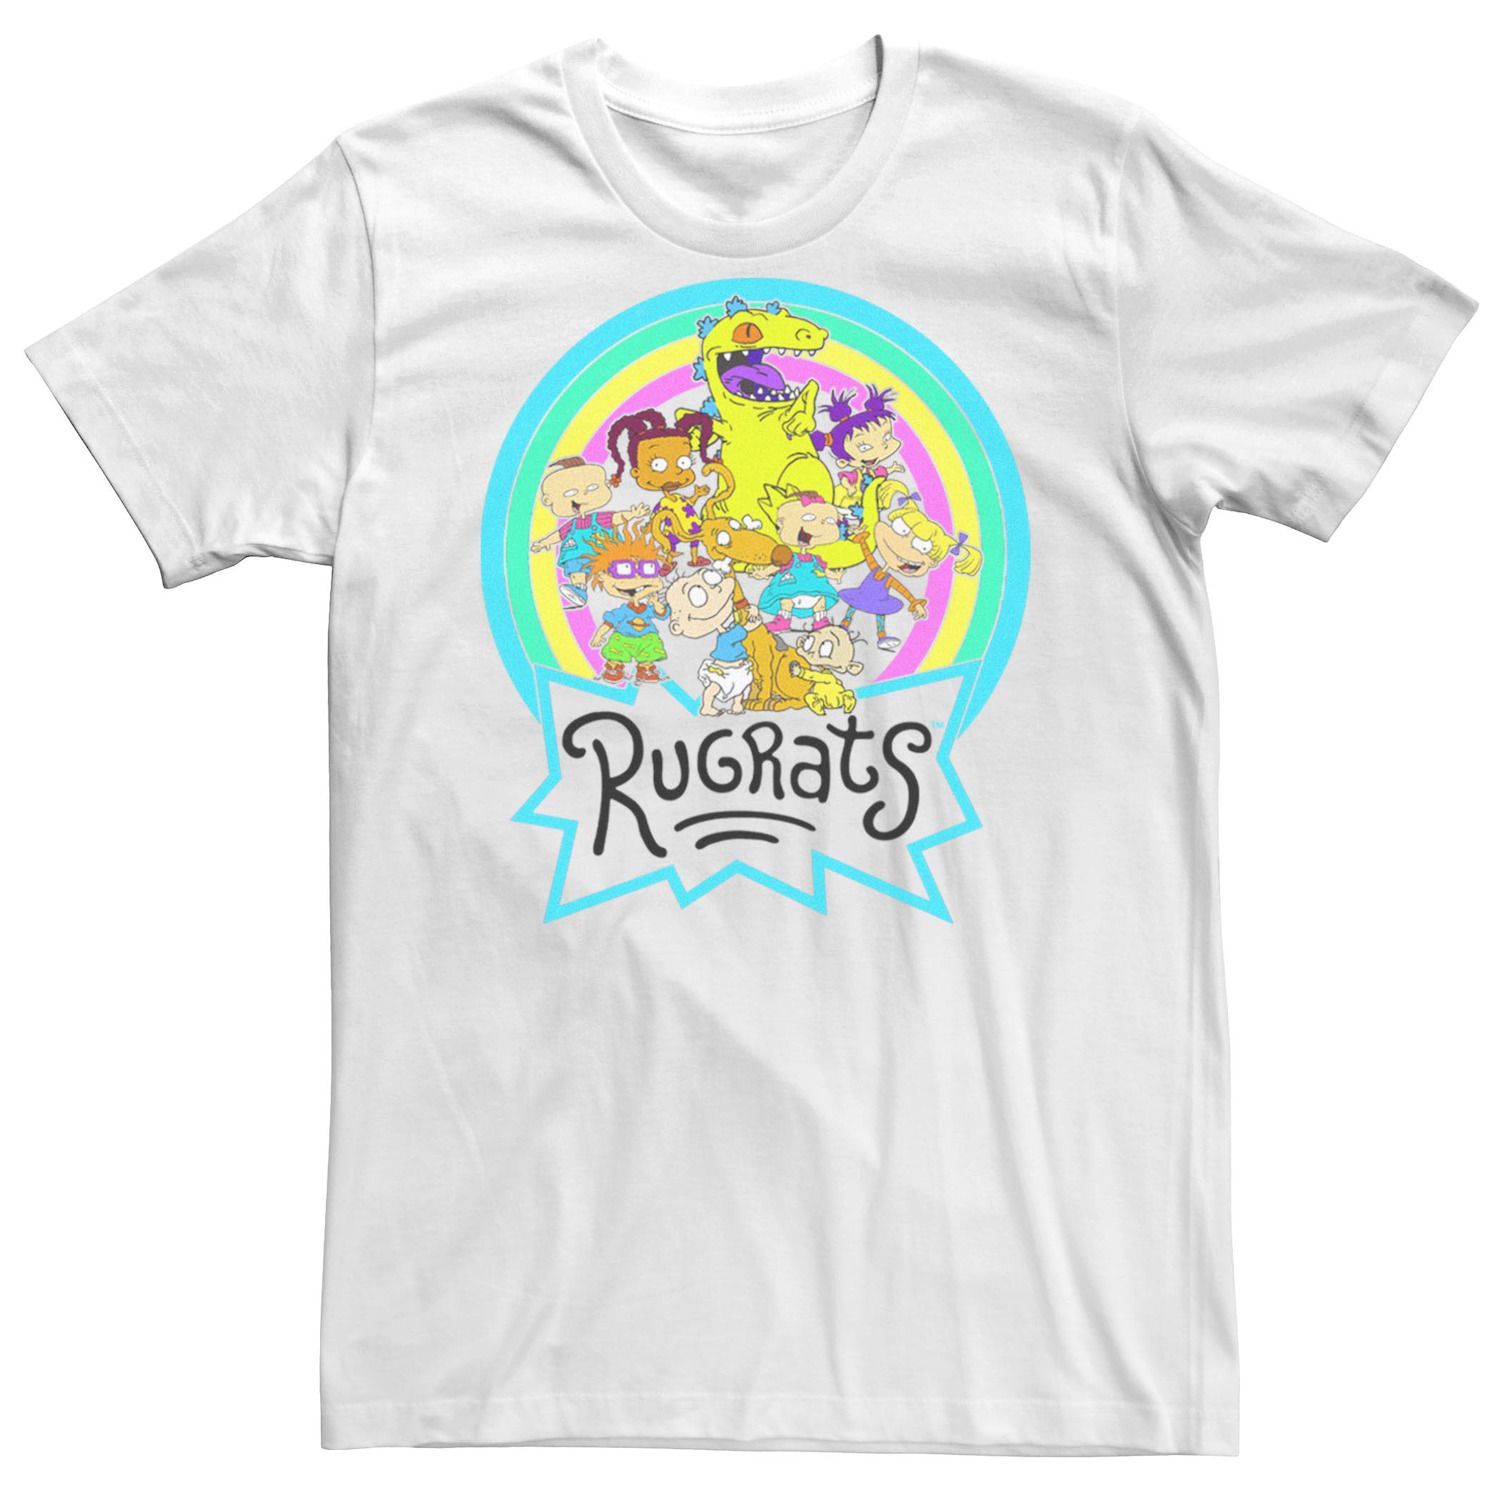 Мужская футболка Rugrats с неоновым кругом и радужной группой Licensed Character чехол mypads девушка с неоновым кругом женский для doogee v11 задняя панель накладка бампер